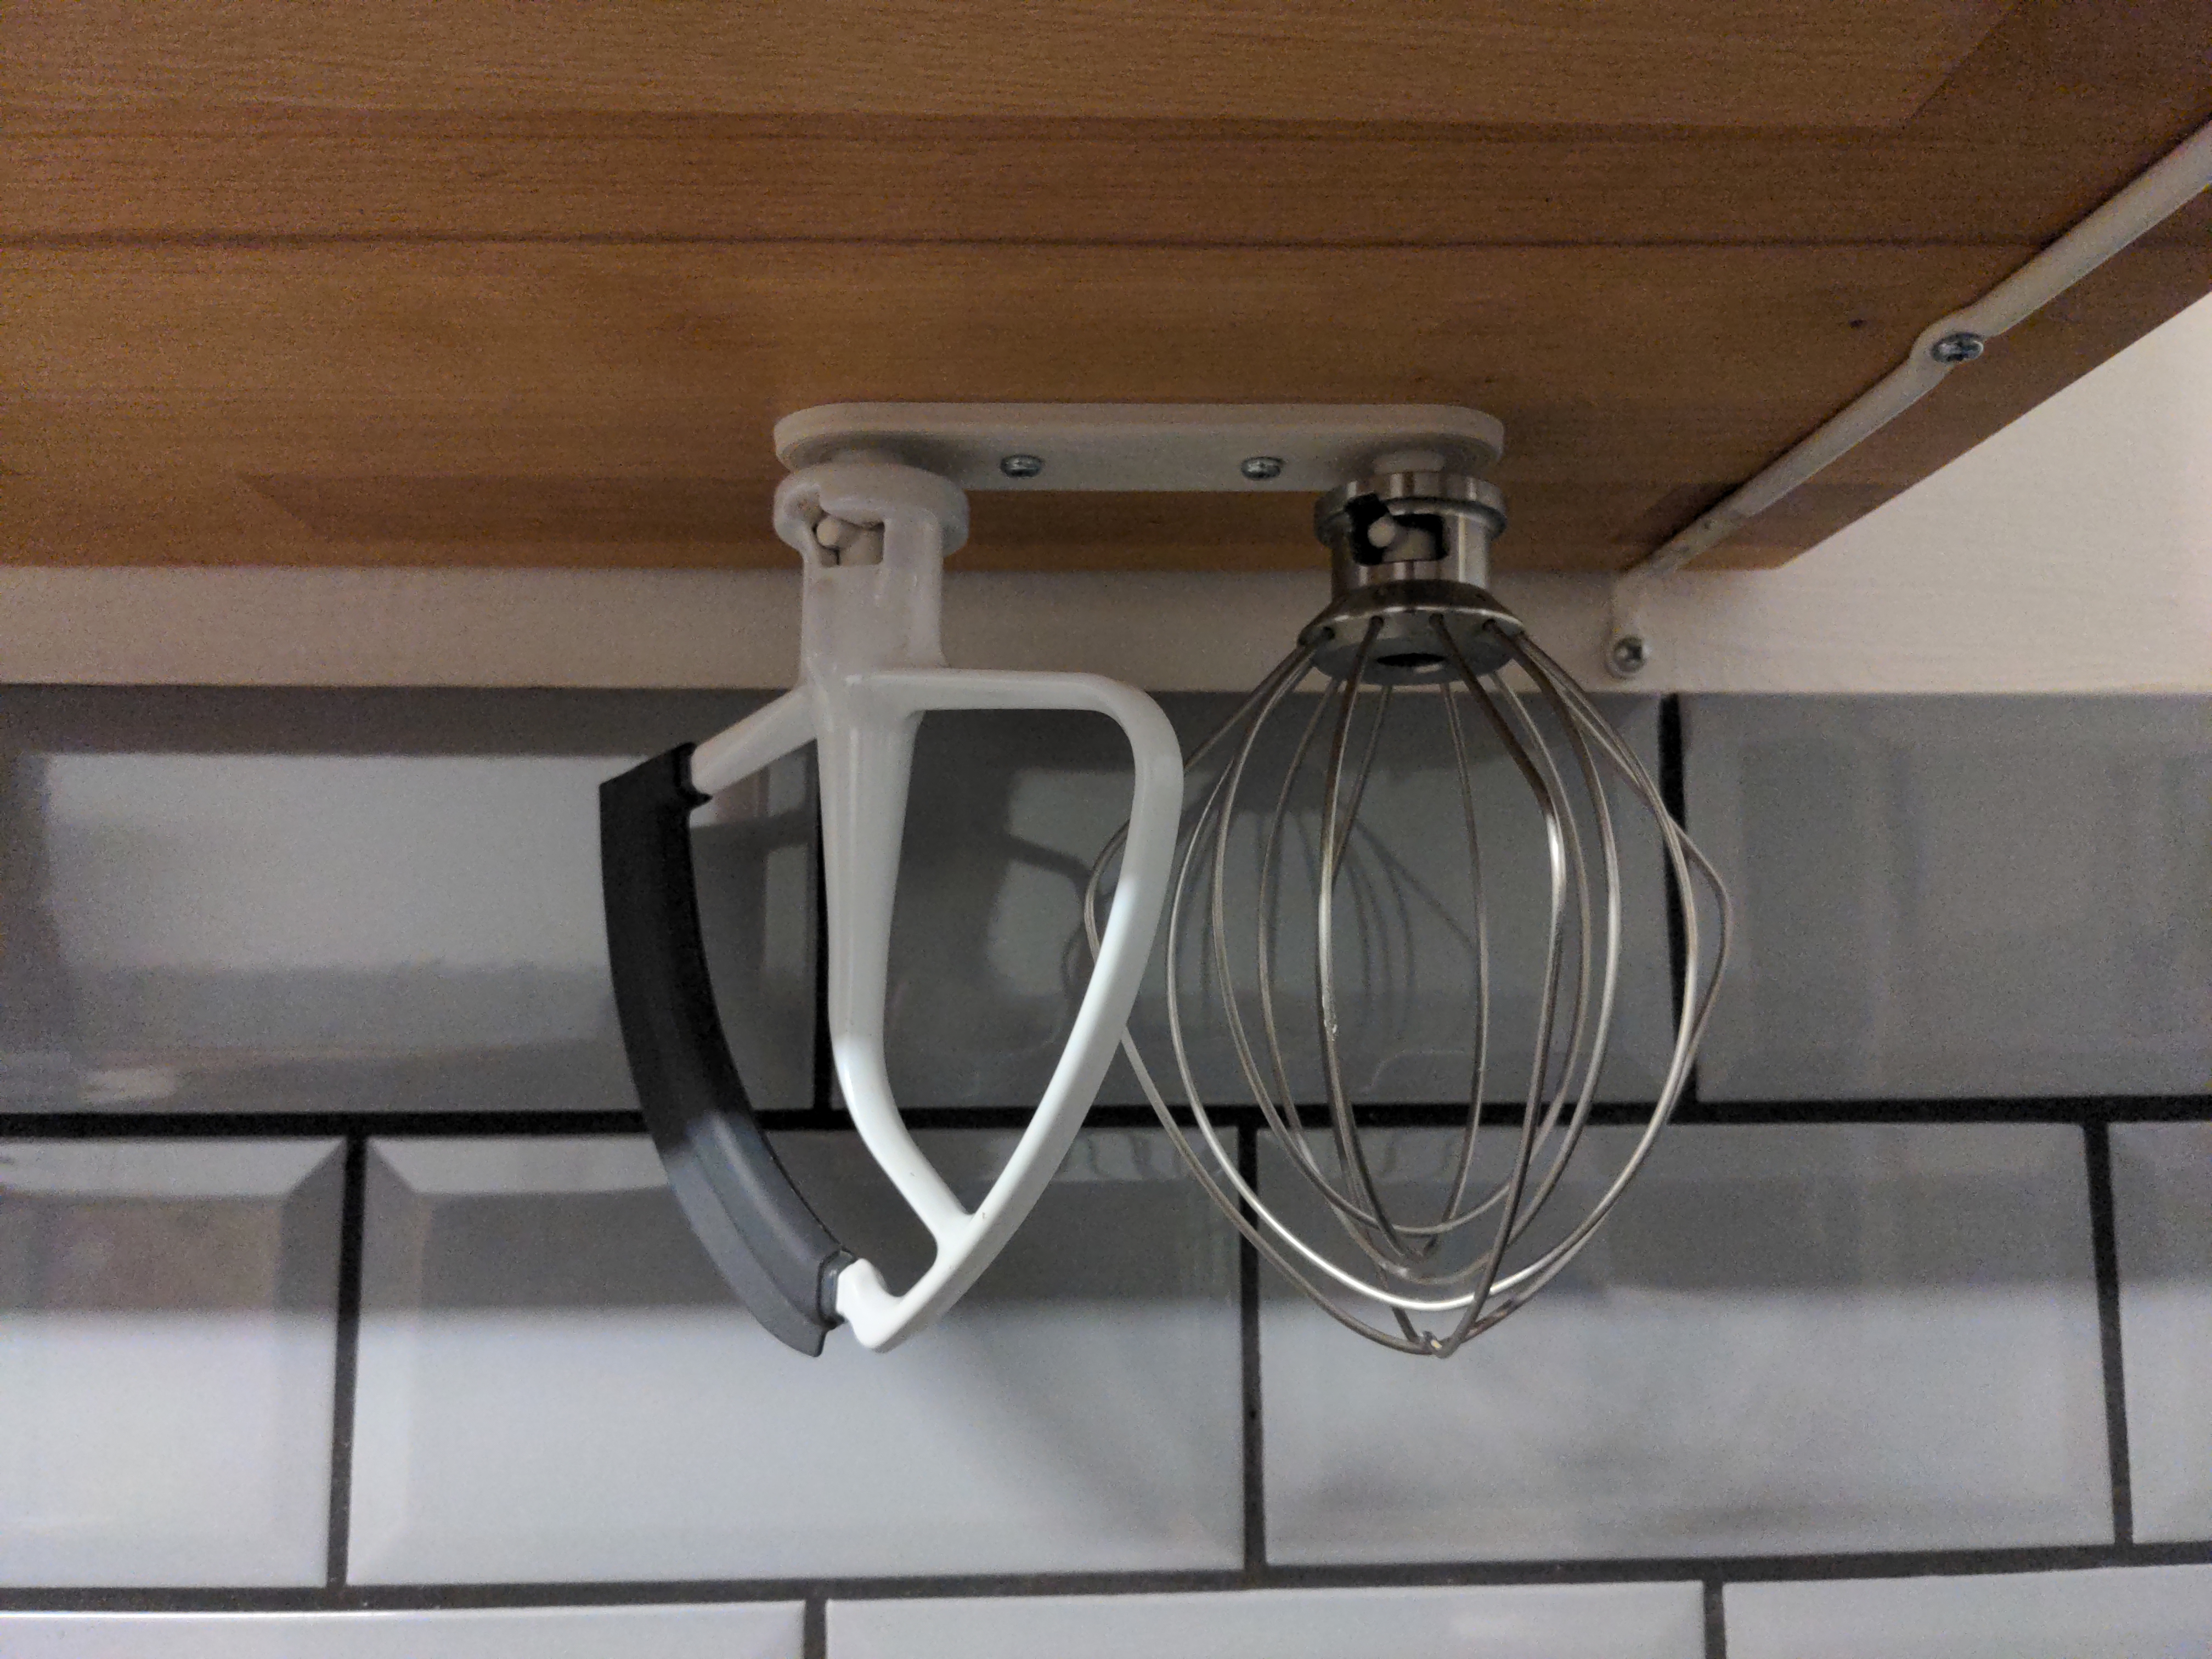 Dual KitchenAid tool holder